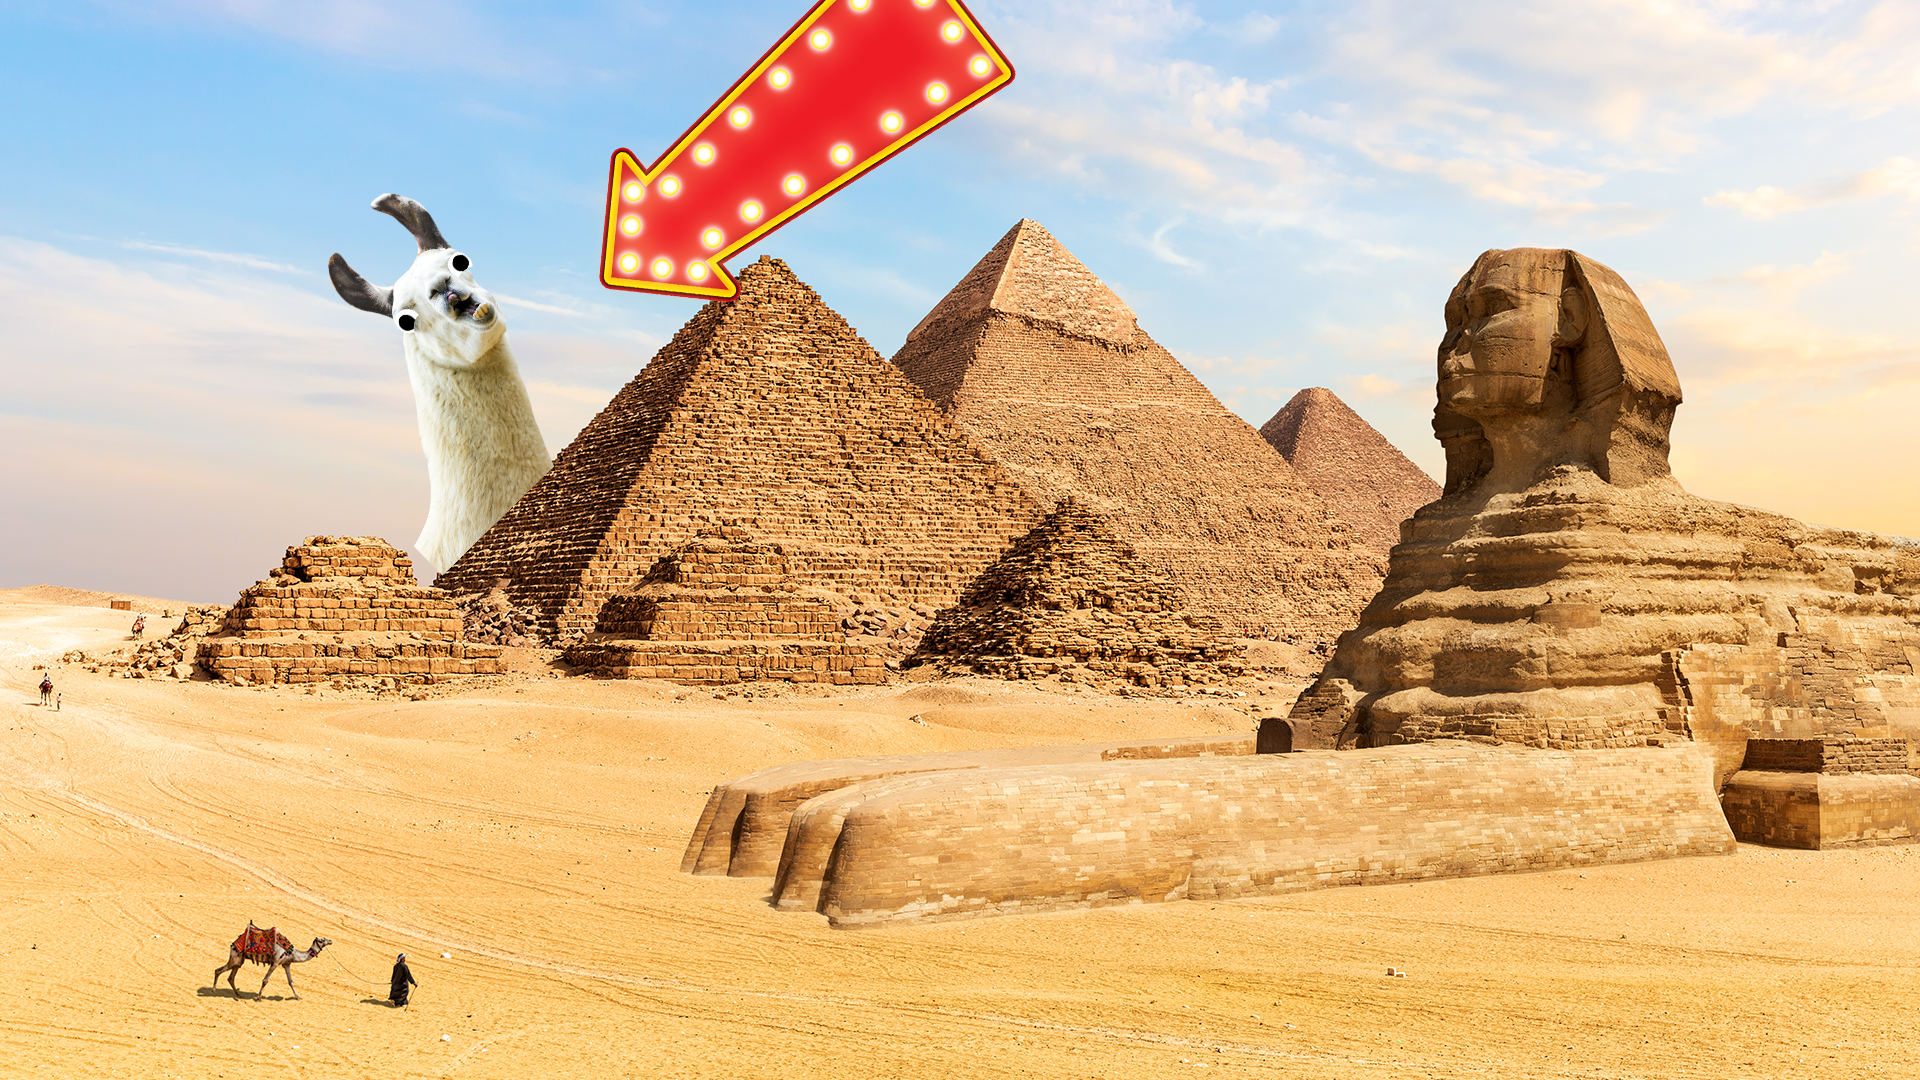 Pyramids of Giza with llama 